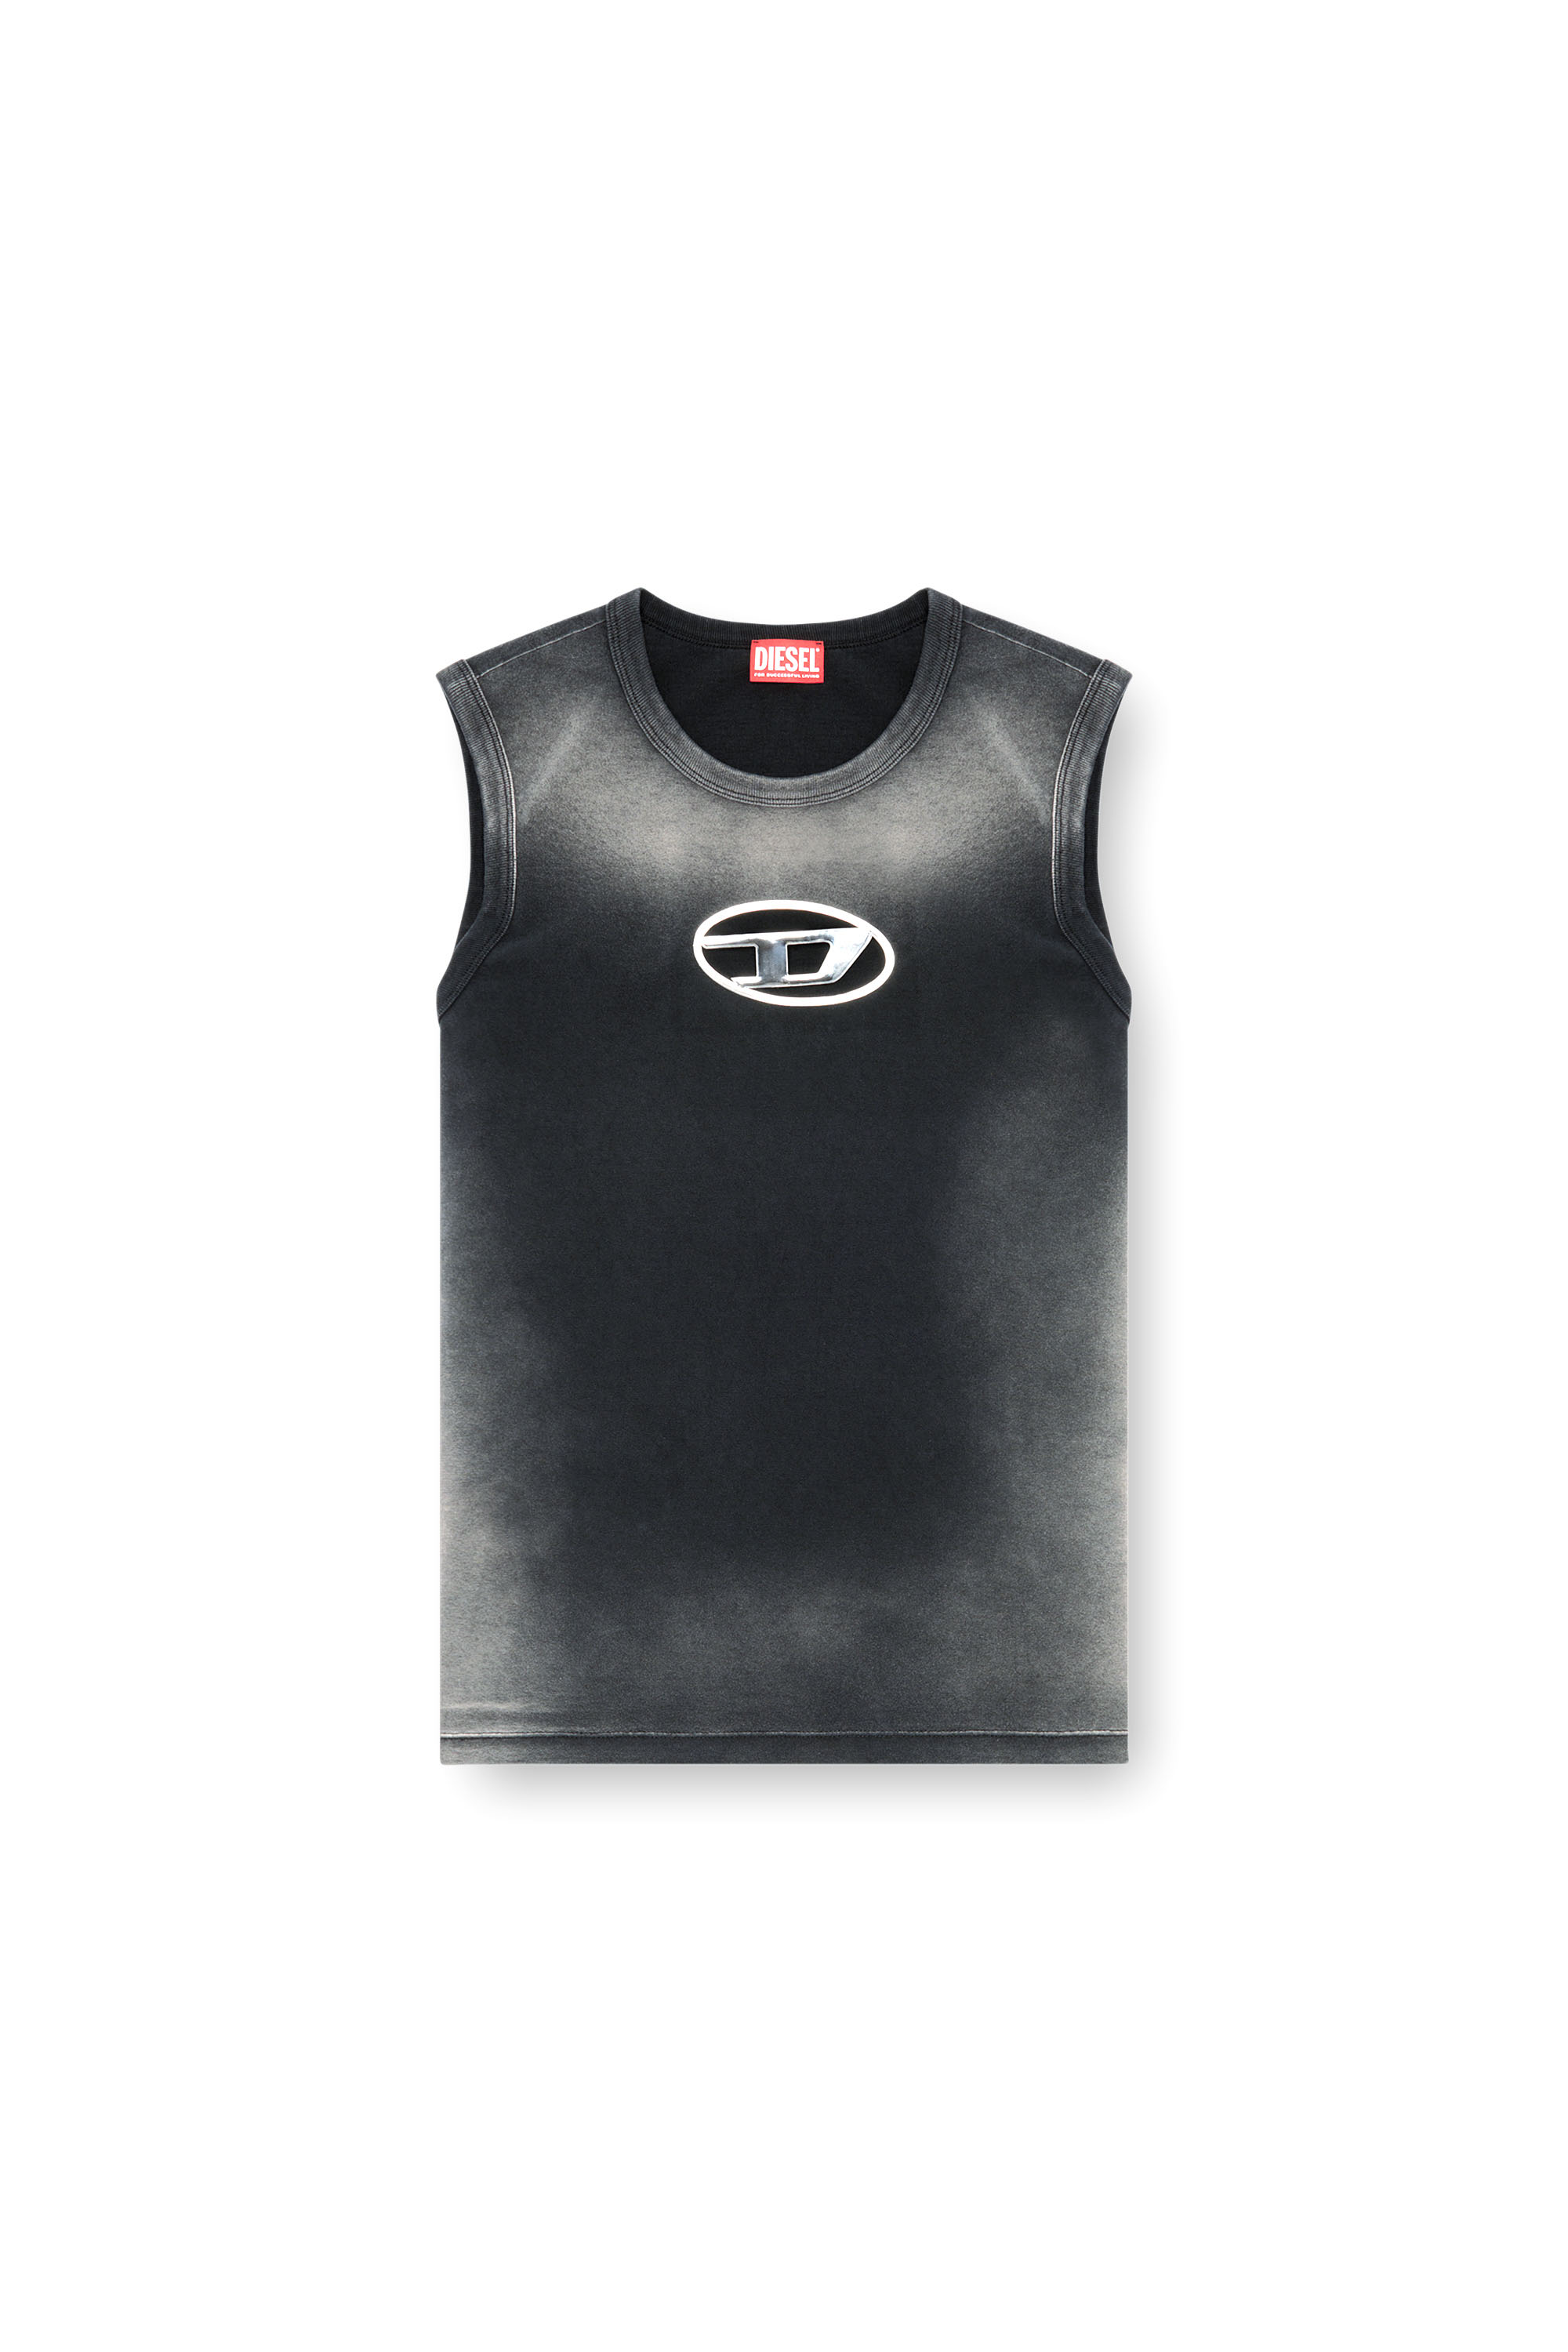 Diesel - T-BRICO, Hombre Camiseta sin mangas desteñida con Oval D en relieve in Negro - Image 3